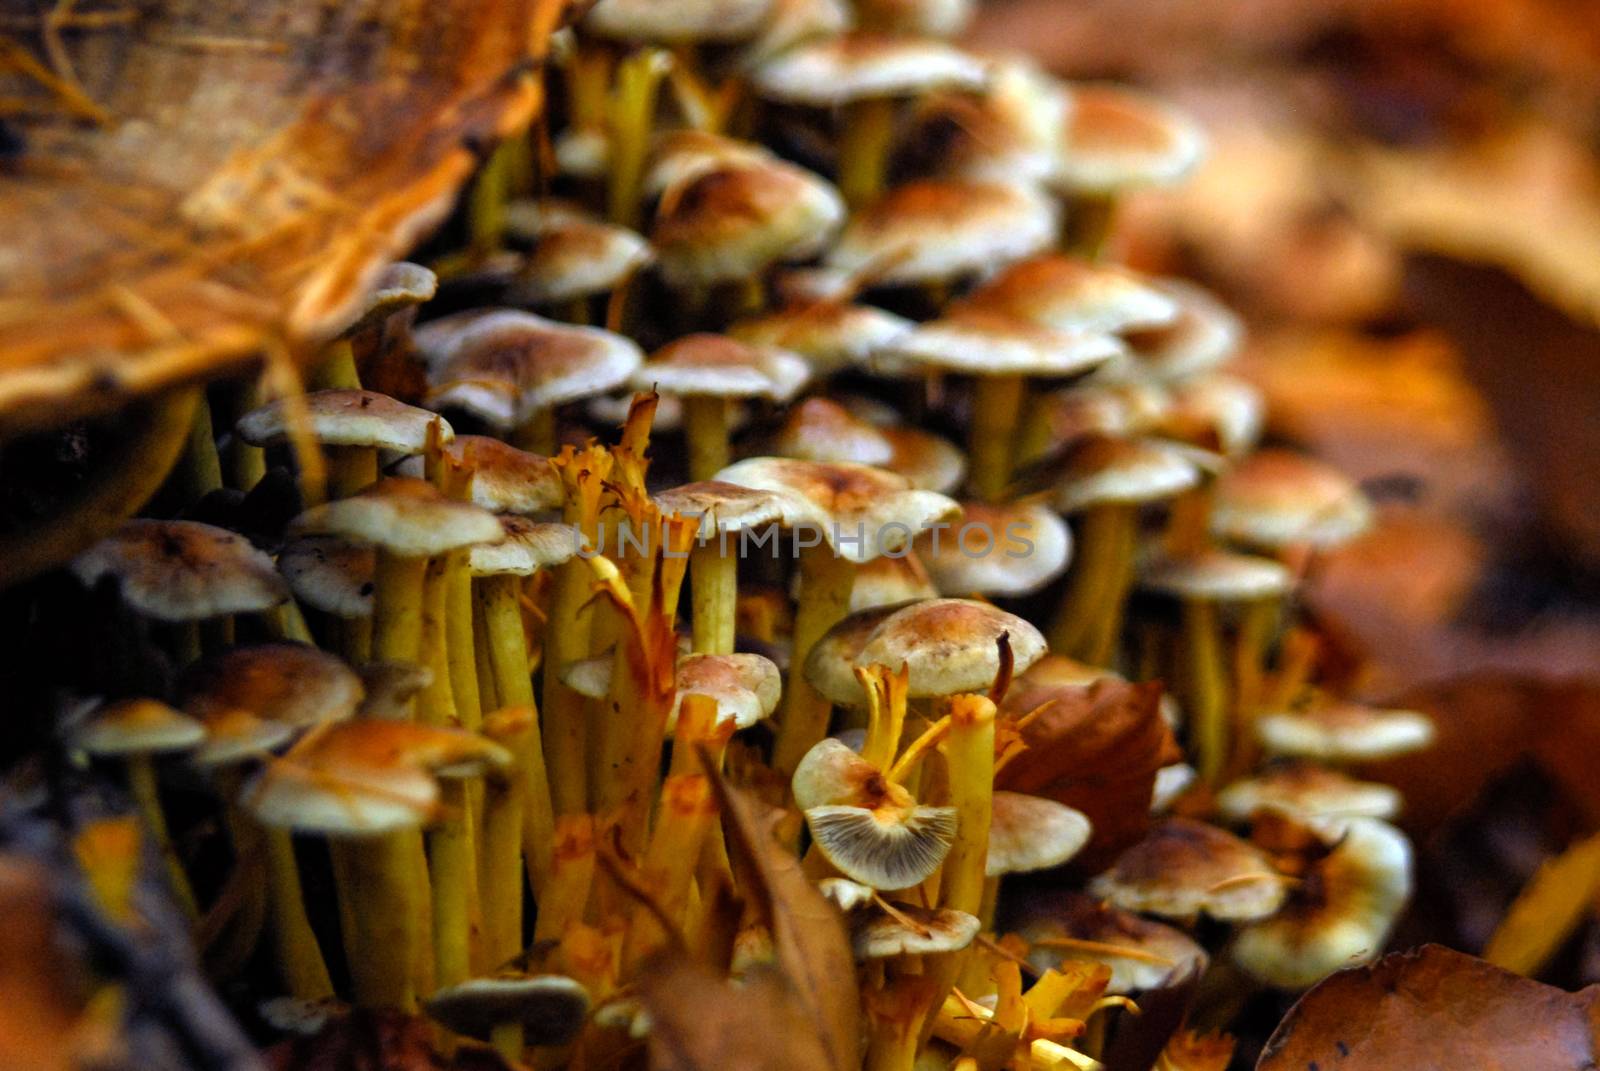 Fungus mushroom orange brown growing on rotten wood by MXW_Stock